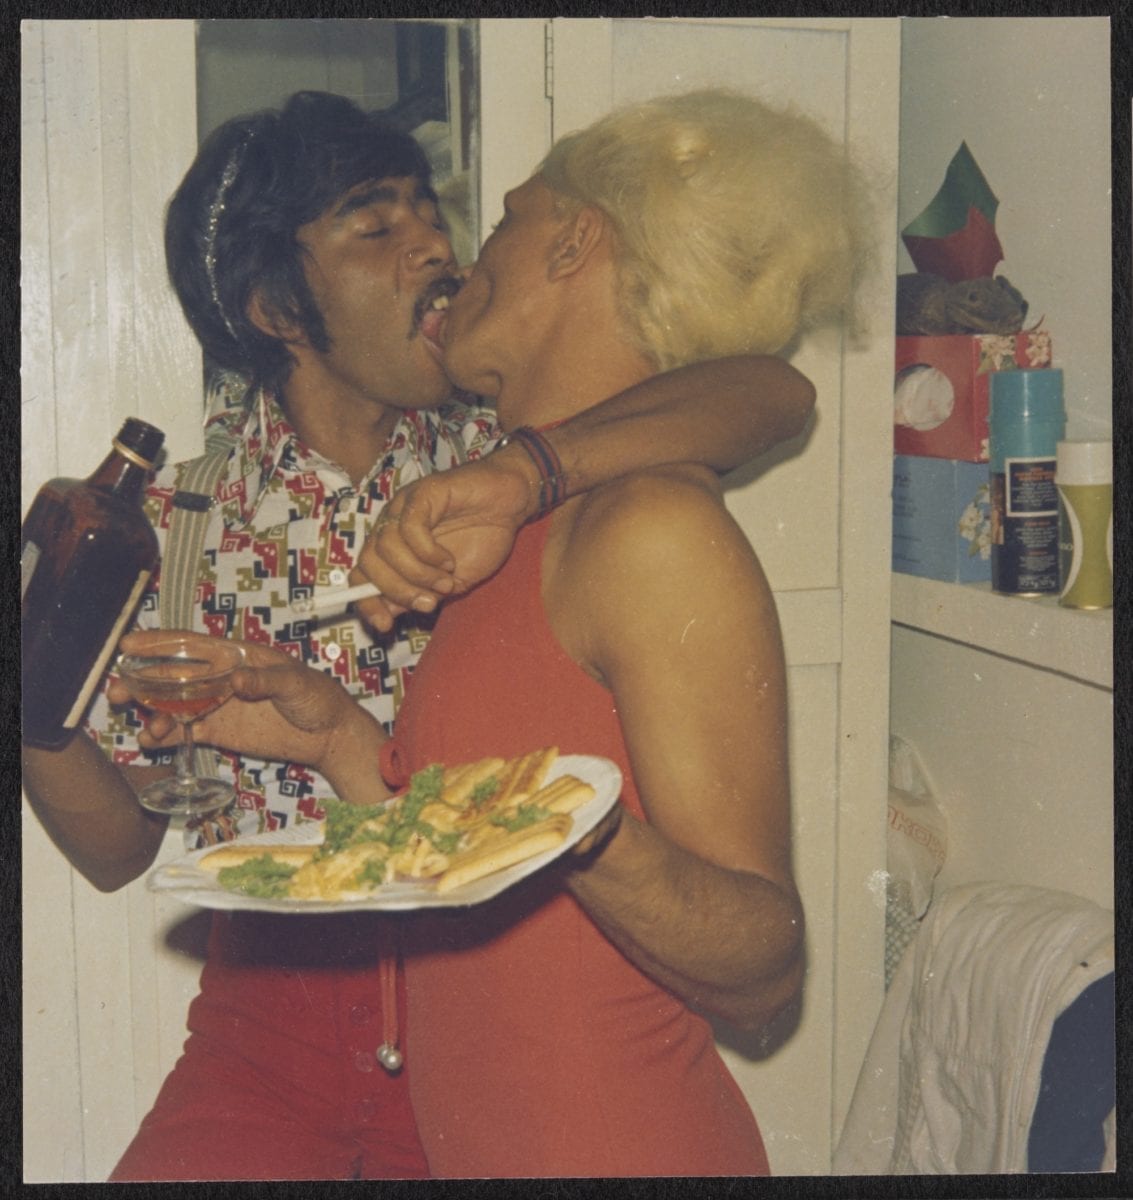 Brian and Kewpie in Kewpie’s bedroom, circa 1960 to 1985